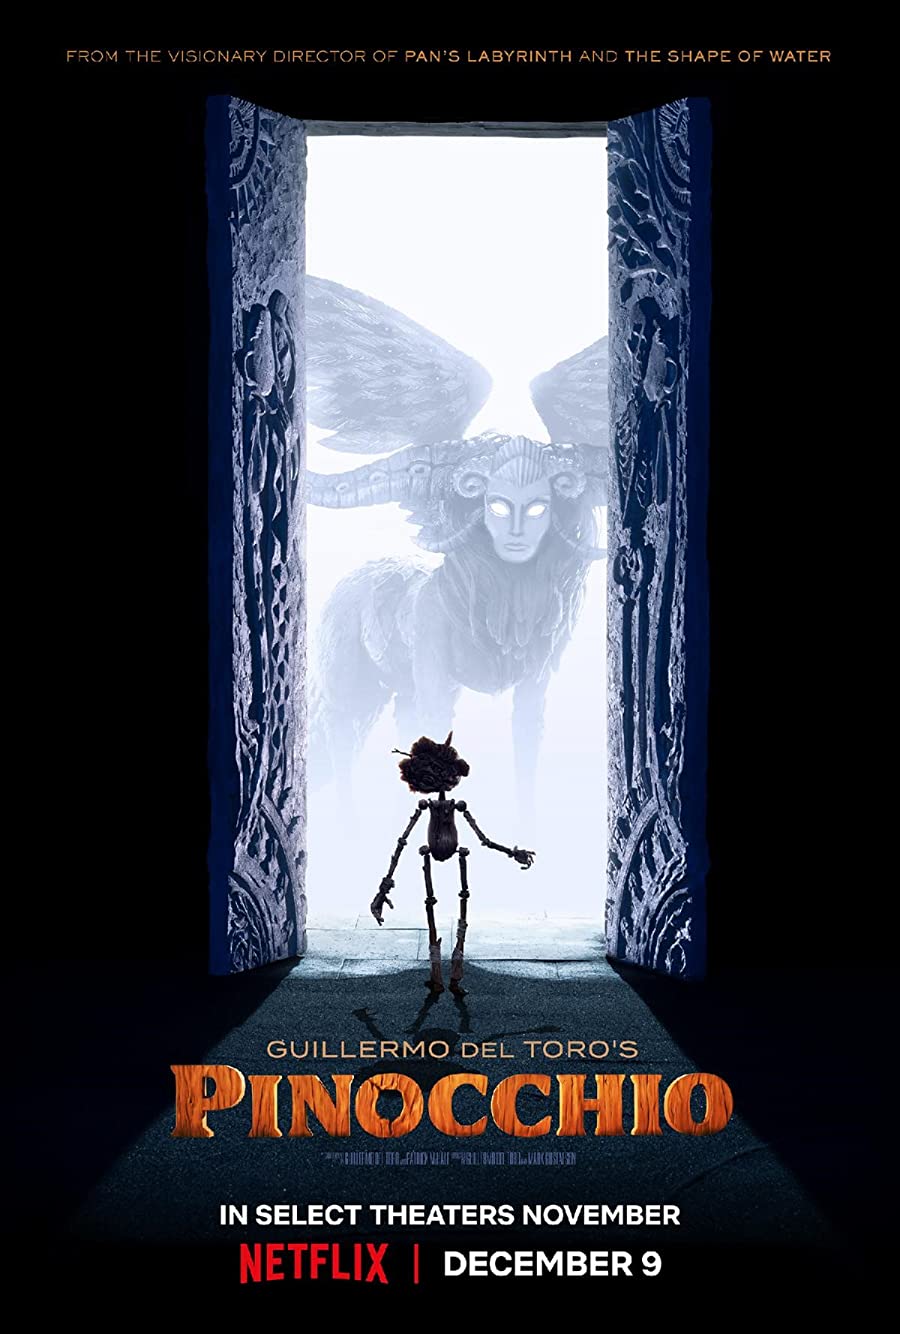 دانلود فیلم Guillermo del Toro's Pinocchio